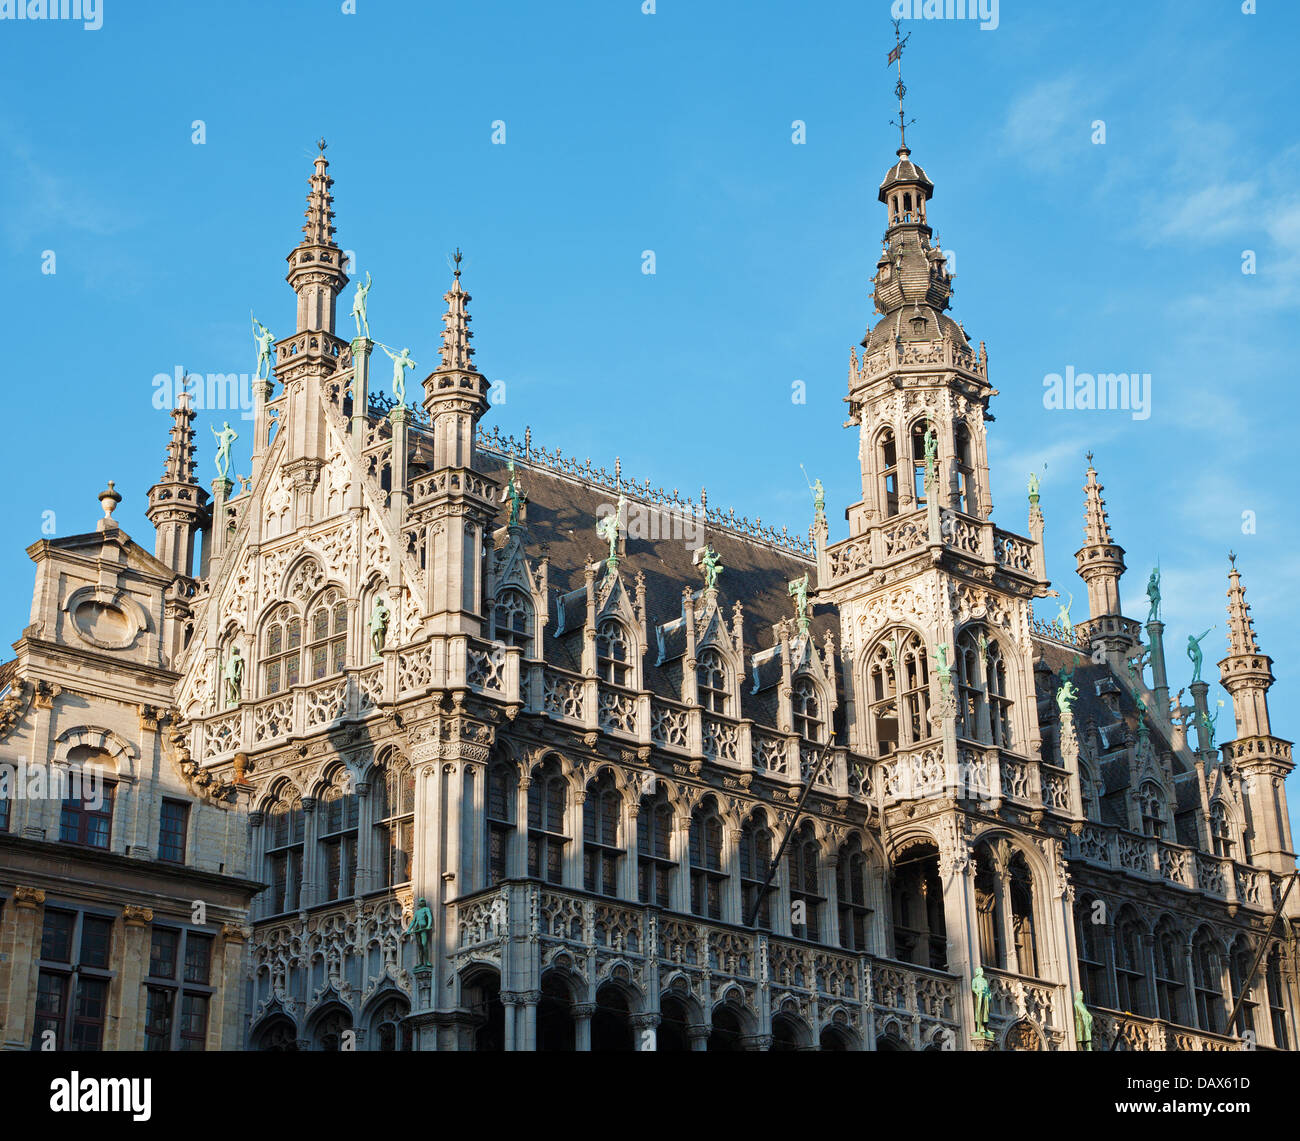 Brüssel - die Fassade und Türme des Grand Palace vom Hauptplatz im Abendlicht. Grote Markt. Stockfoto